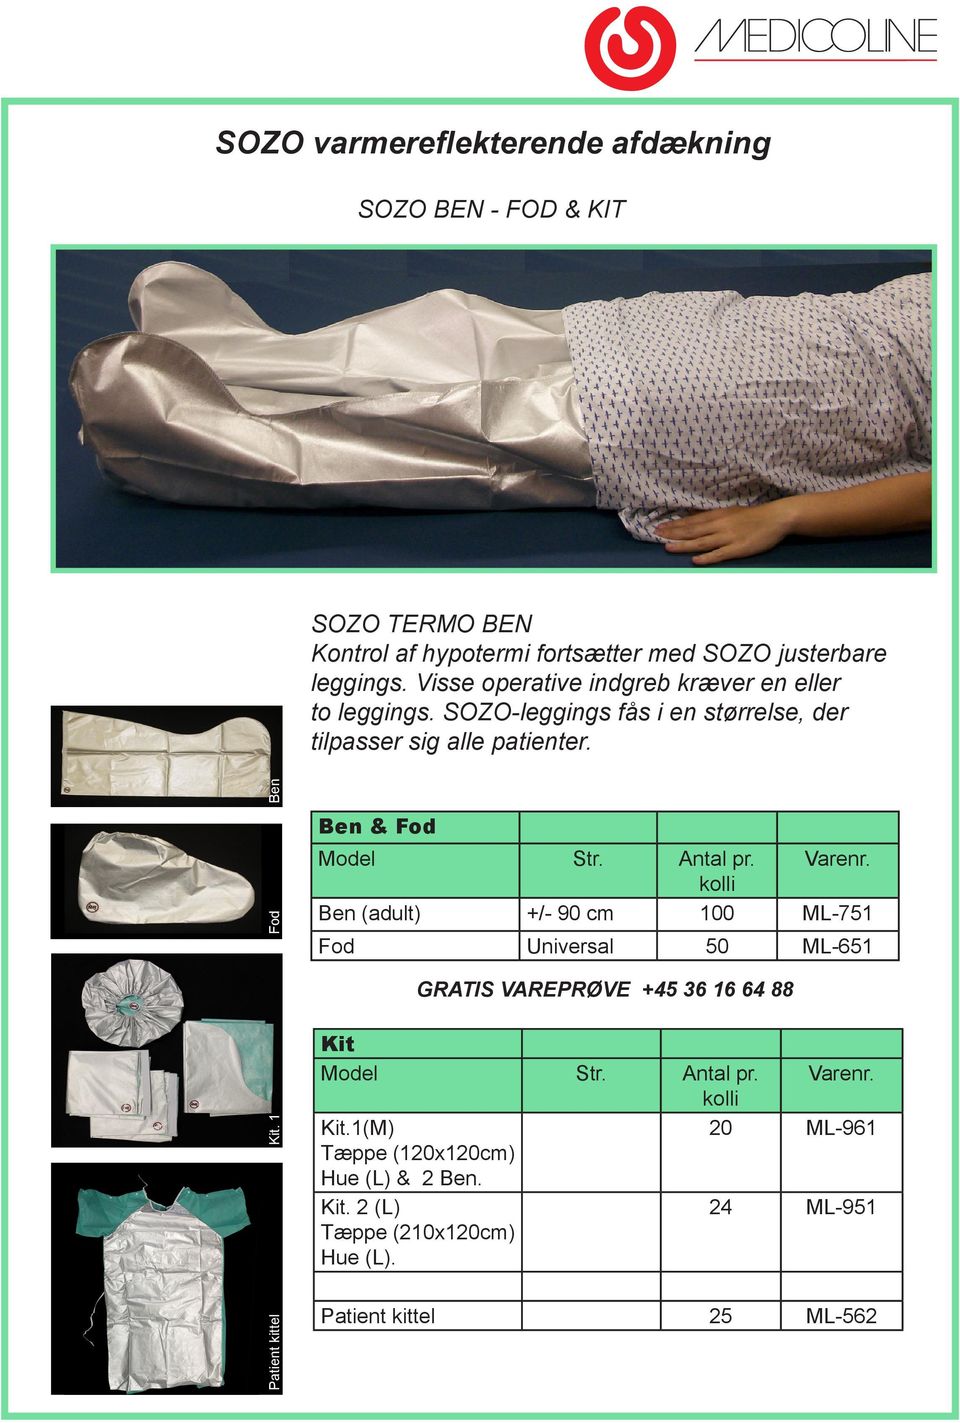 SOZO-leggings fås i en størrelse, der tilpasser sig alle patienter. Patient kittel Kit.